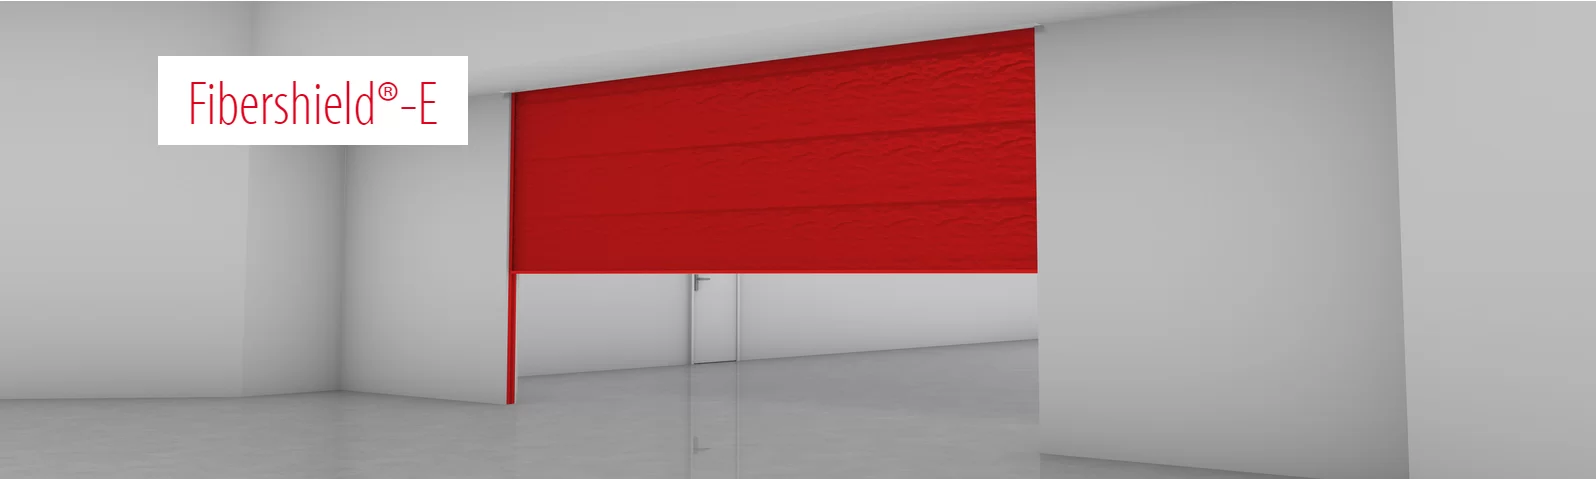 Imagem em mockup do modelo de cortina corta-fogo modelo Fibershield-E